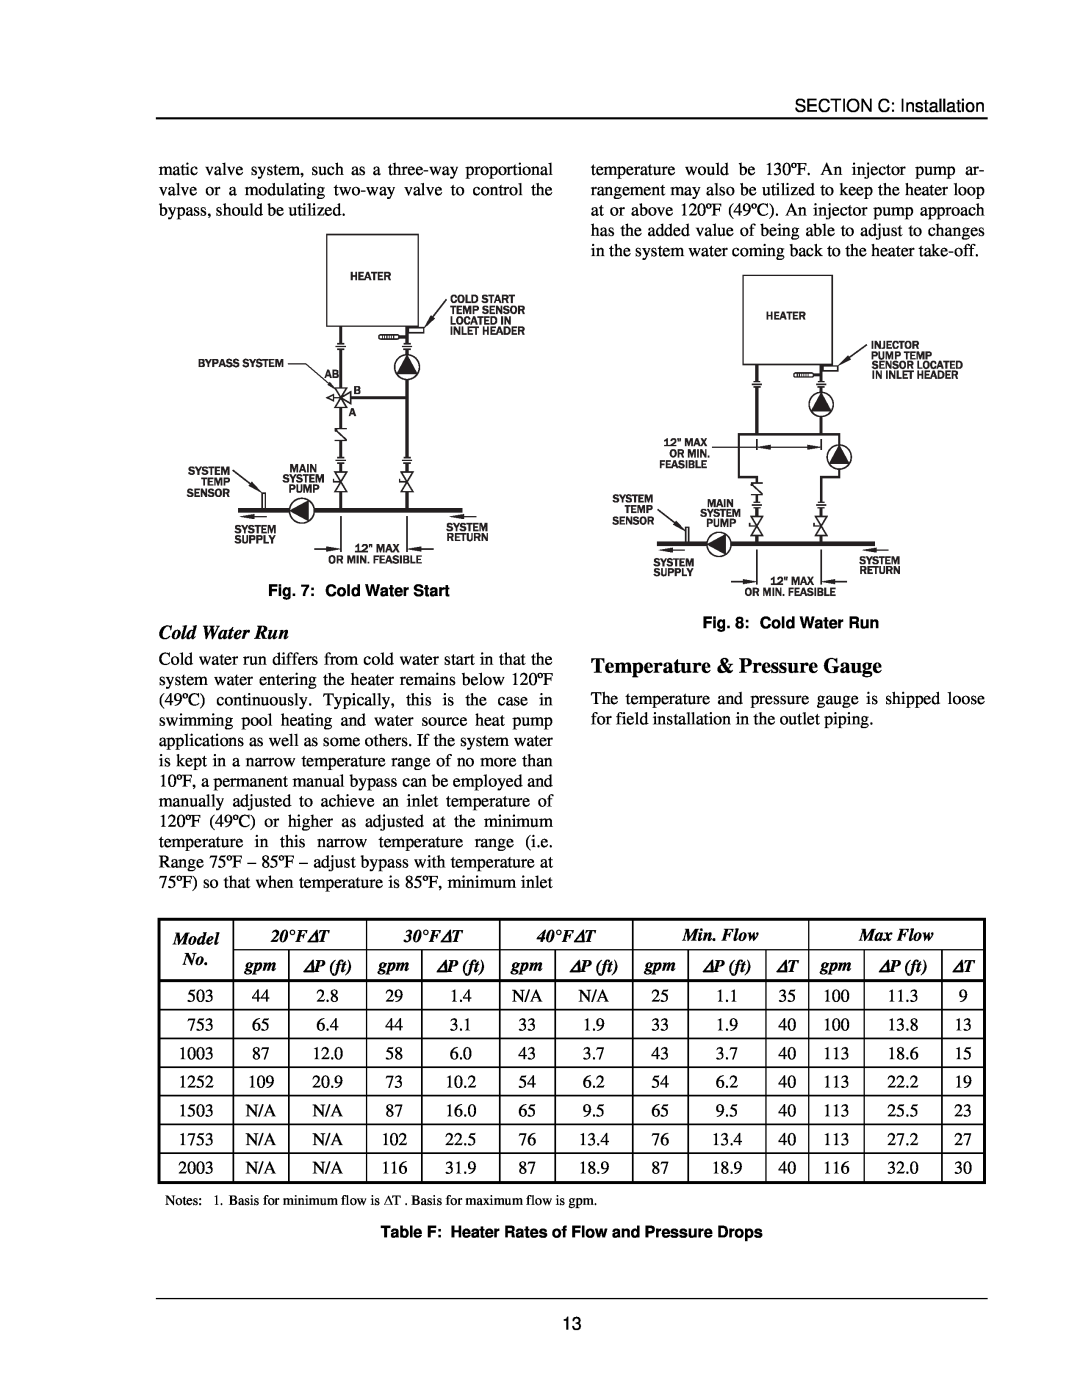 Raypak 503-2003 manual Temperature & Pressure Gauge, Cold Water Run 